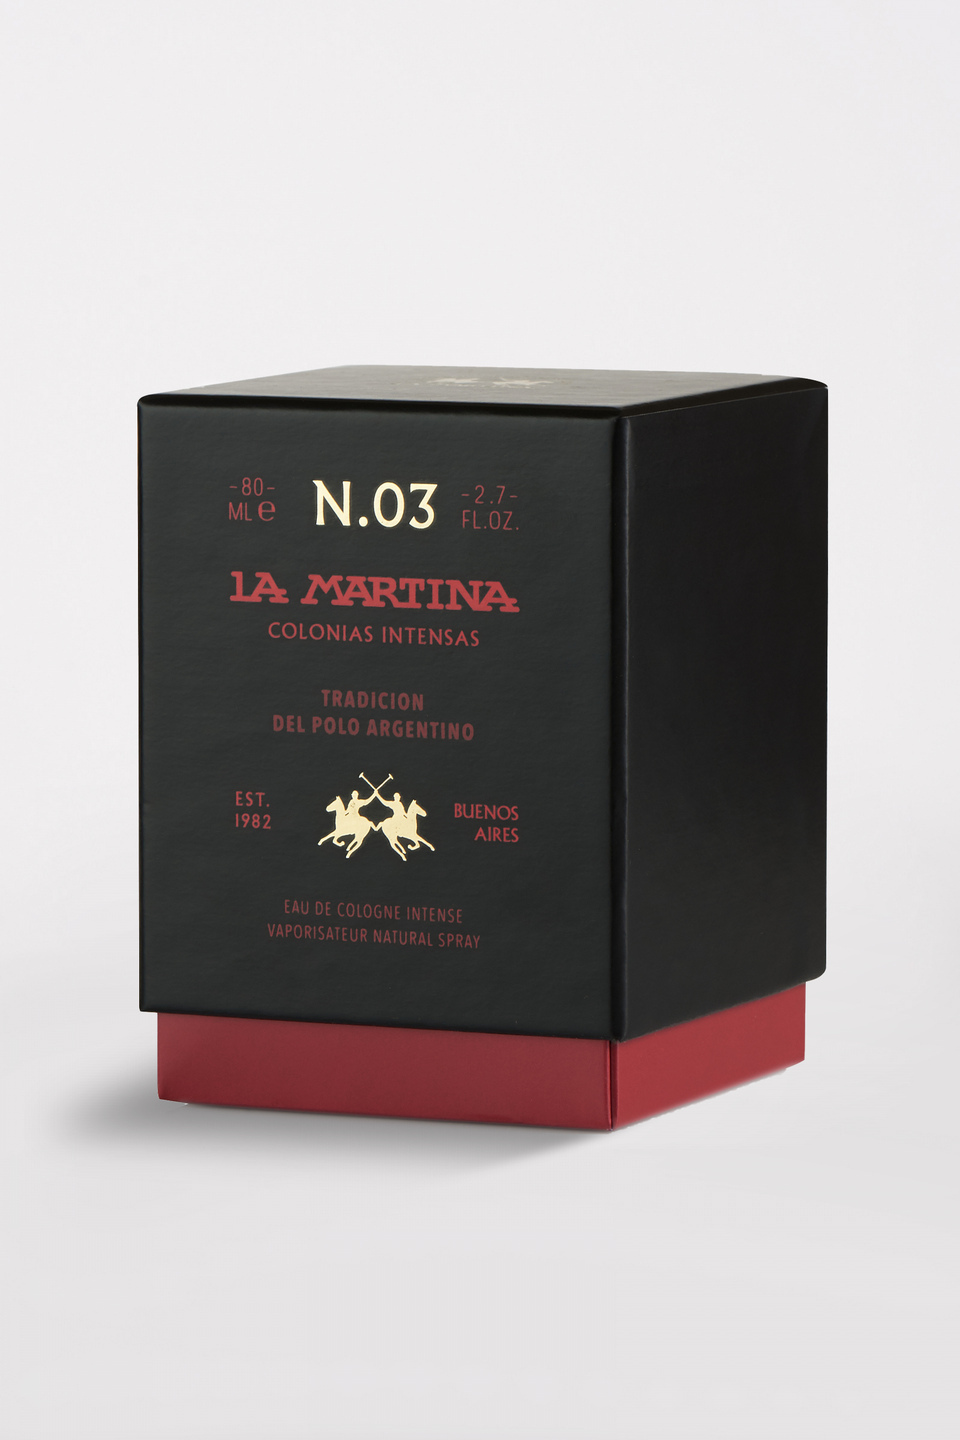 Fragancia unisex elegante y sofisticada, con notas florales y cítricas - La Martina - Official Online Shop